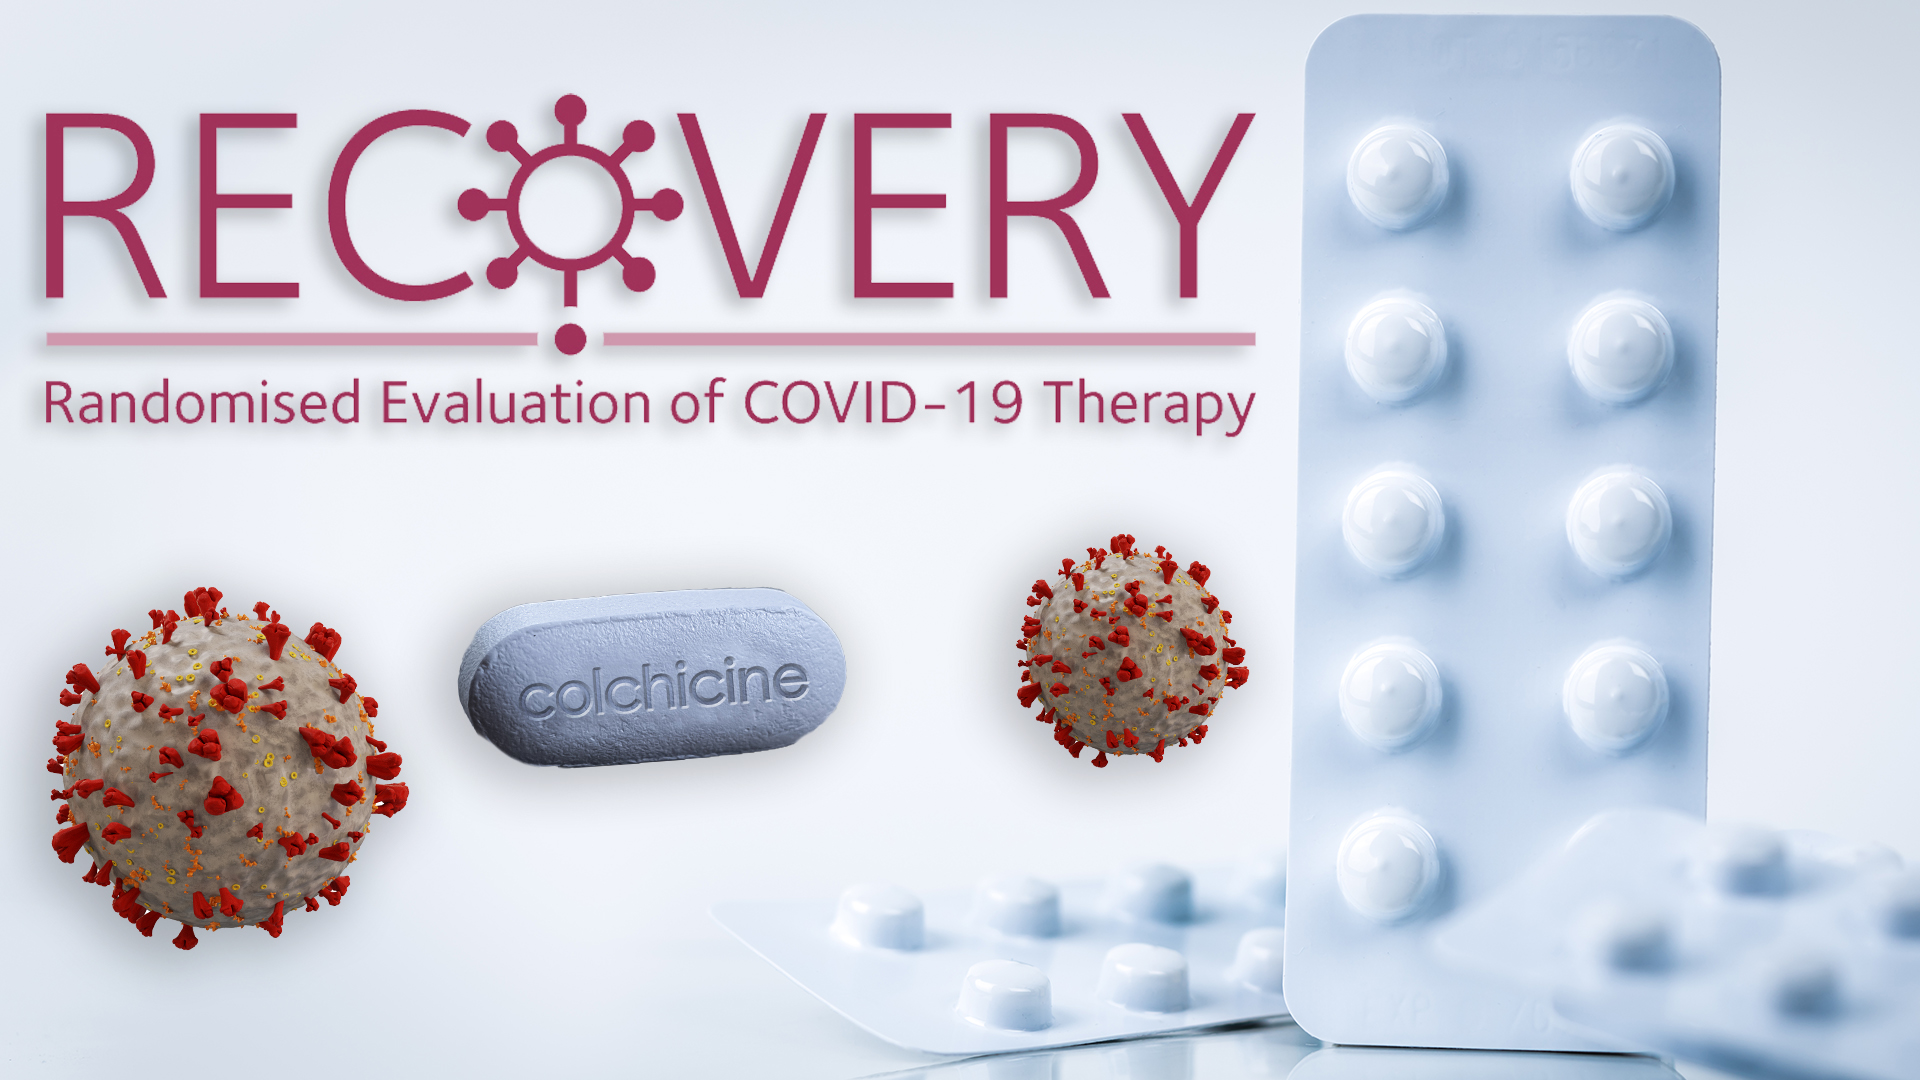 Uno de los ensayos más grandes del mundo, RECOVERY, anunció que sumó a la colchicina como fármaco a estudiar como tratamiento frente al COVID-19